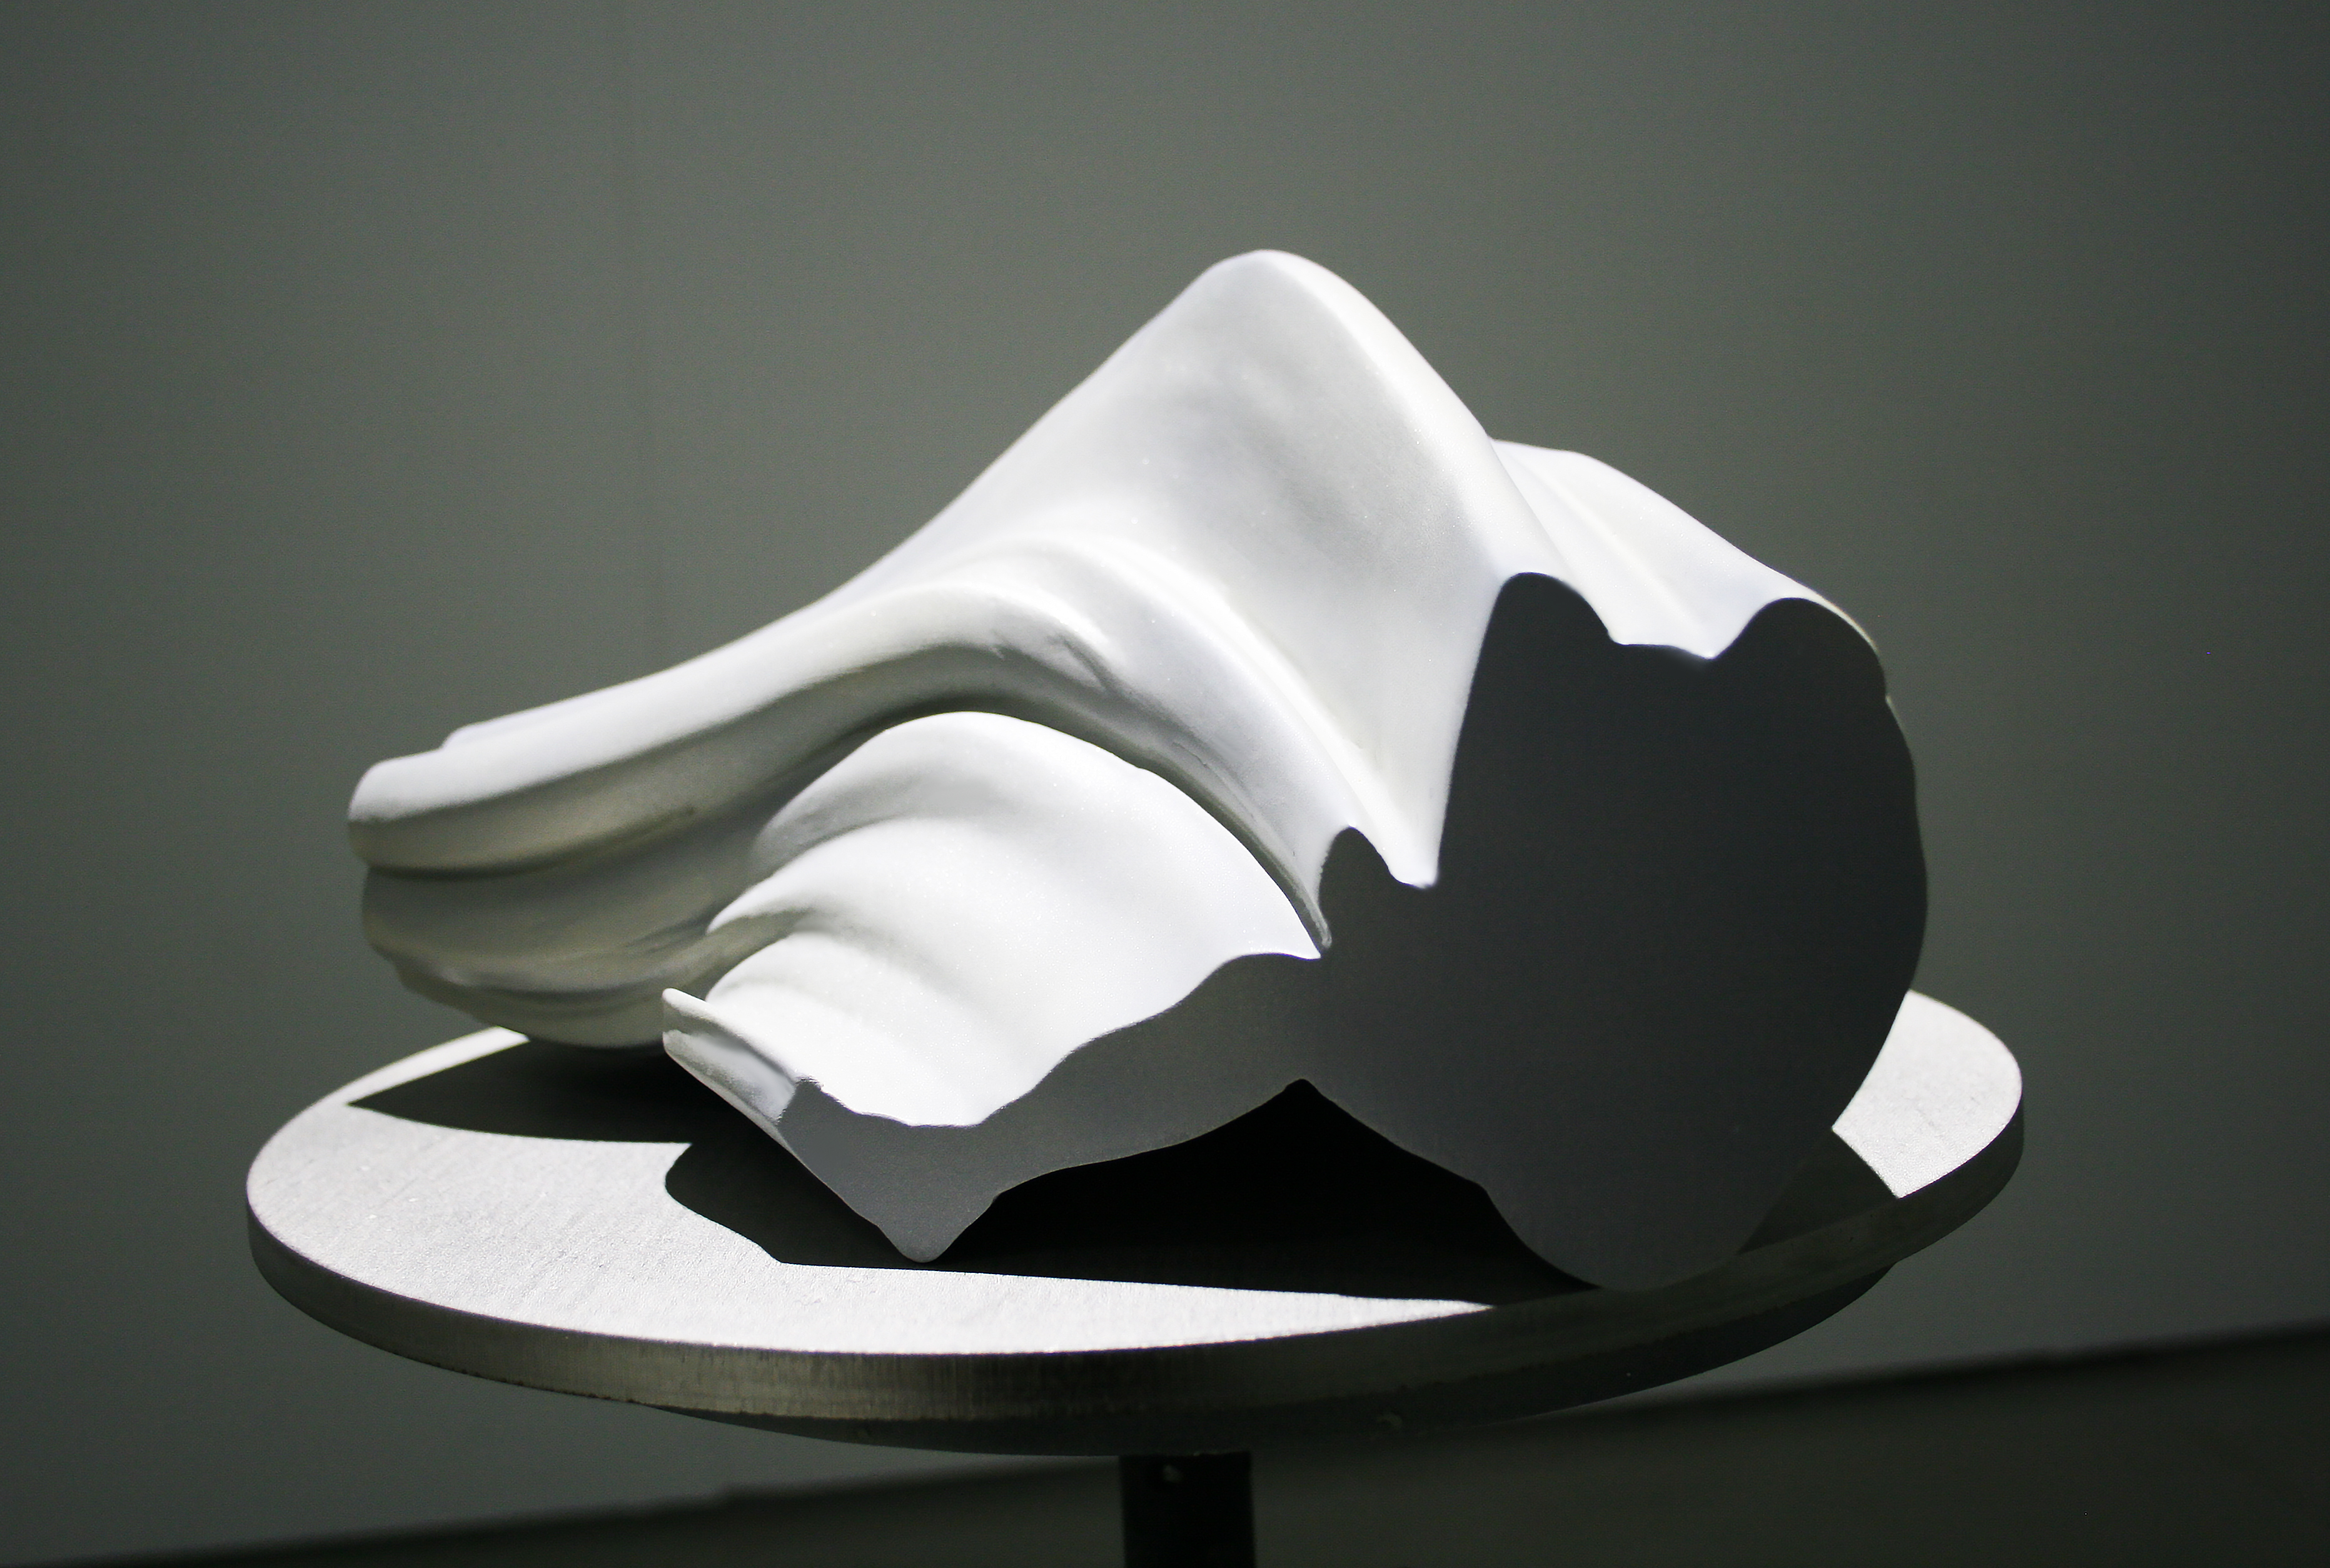 Satu-Minna Suorajärvi, 3d printed sculpture